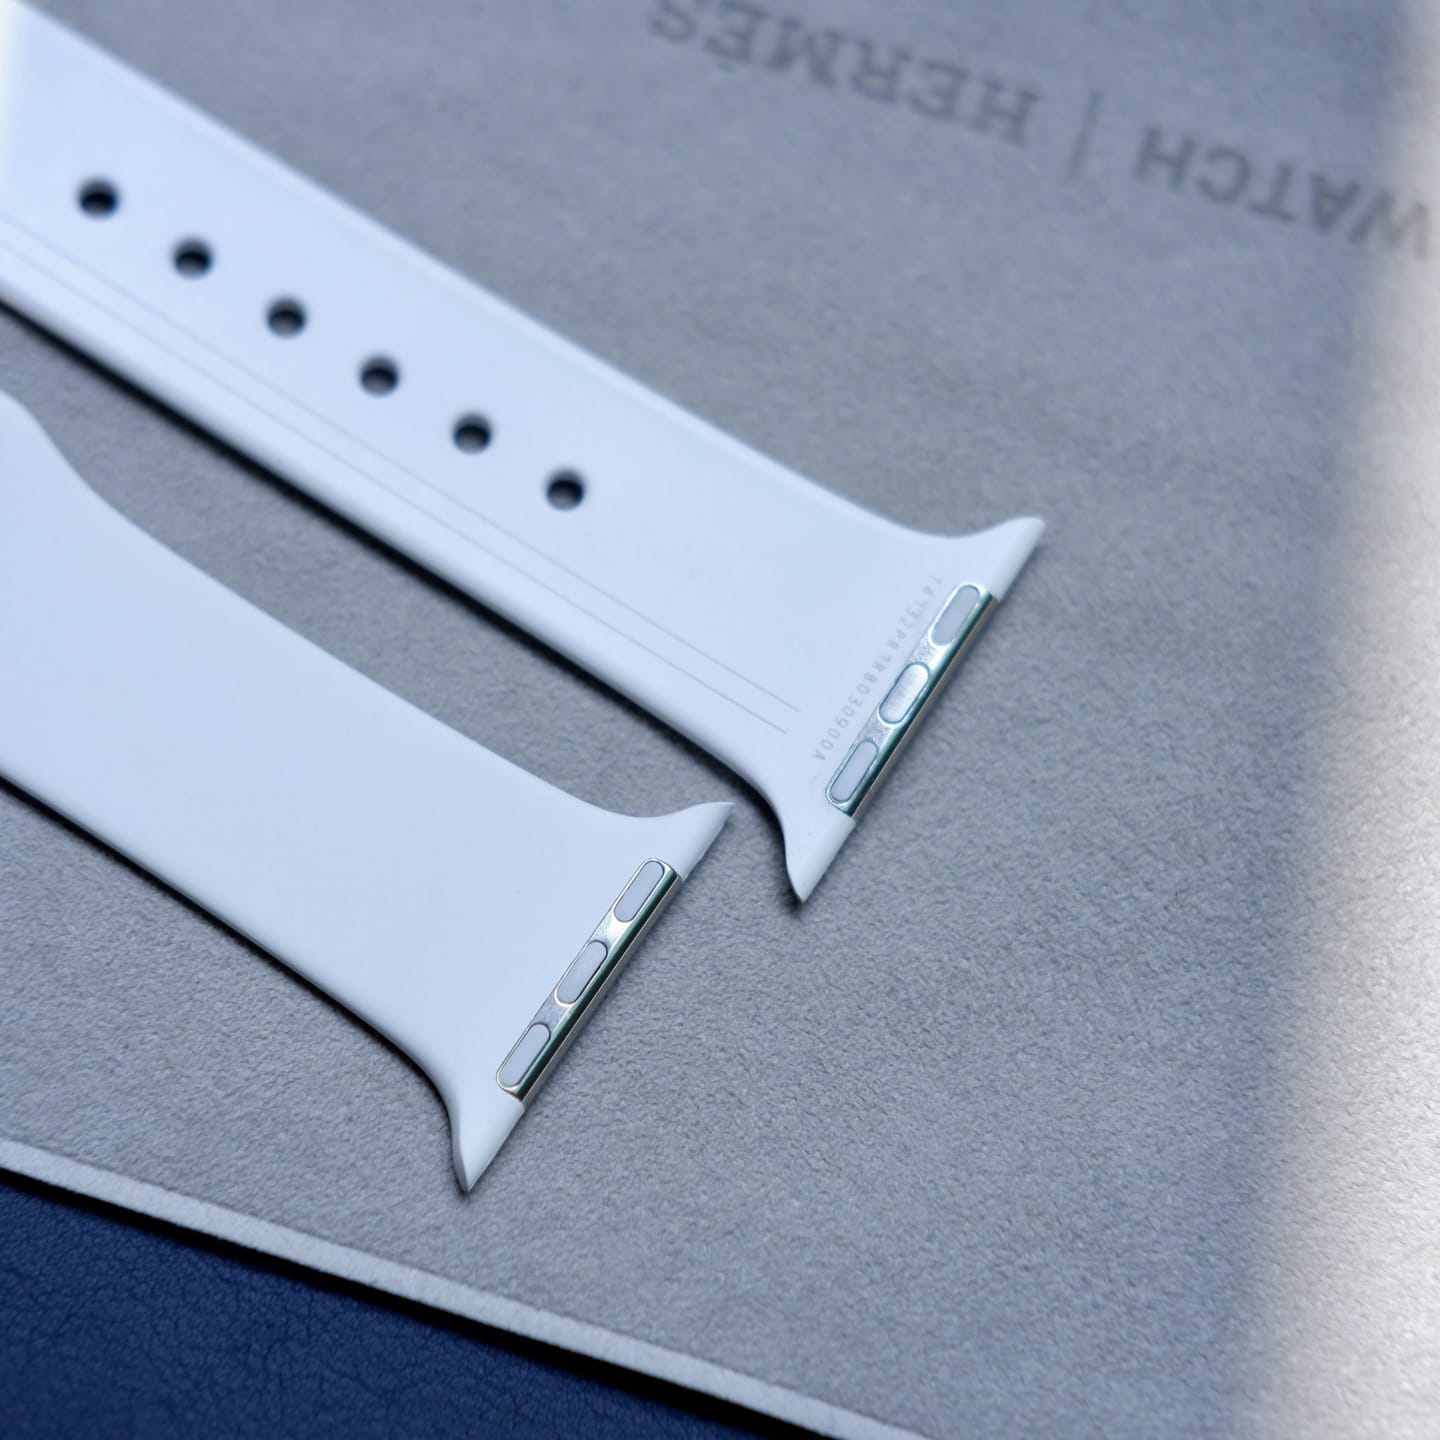 苹果早期 Apple Watch “高端款”运动硅胶表带曝光